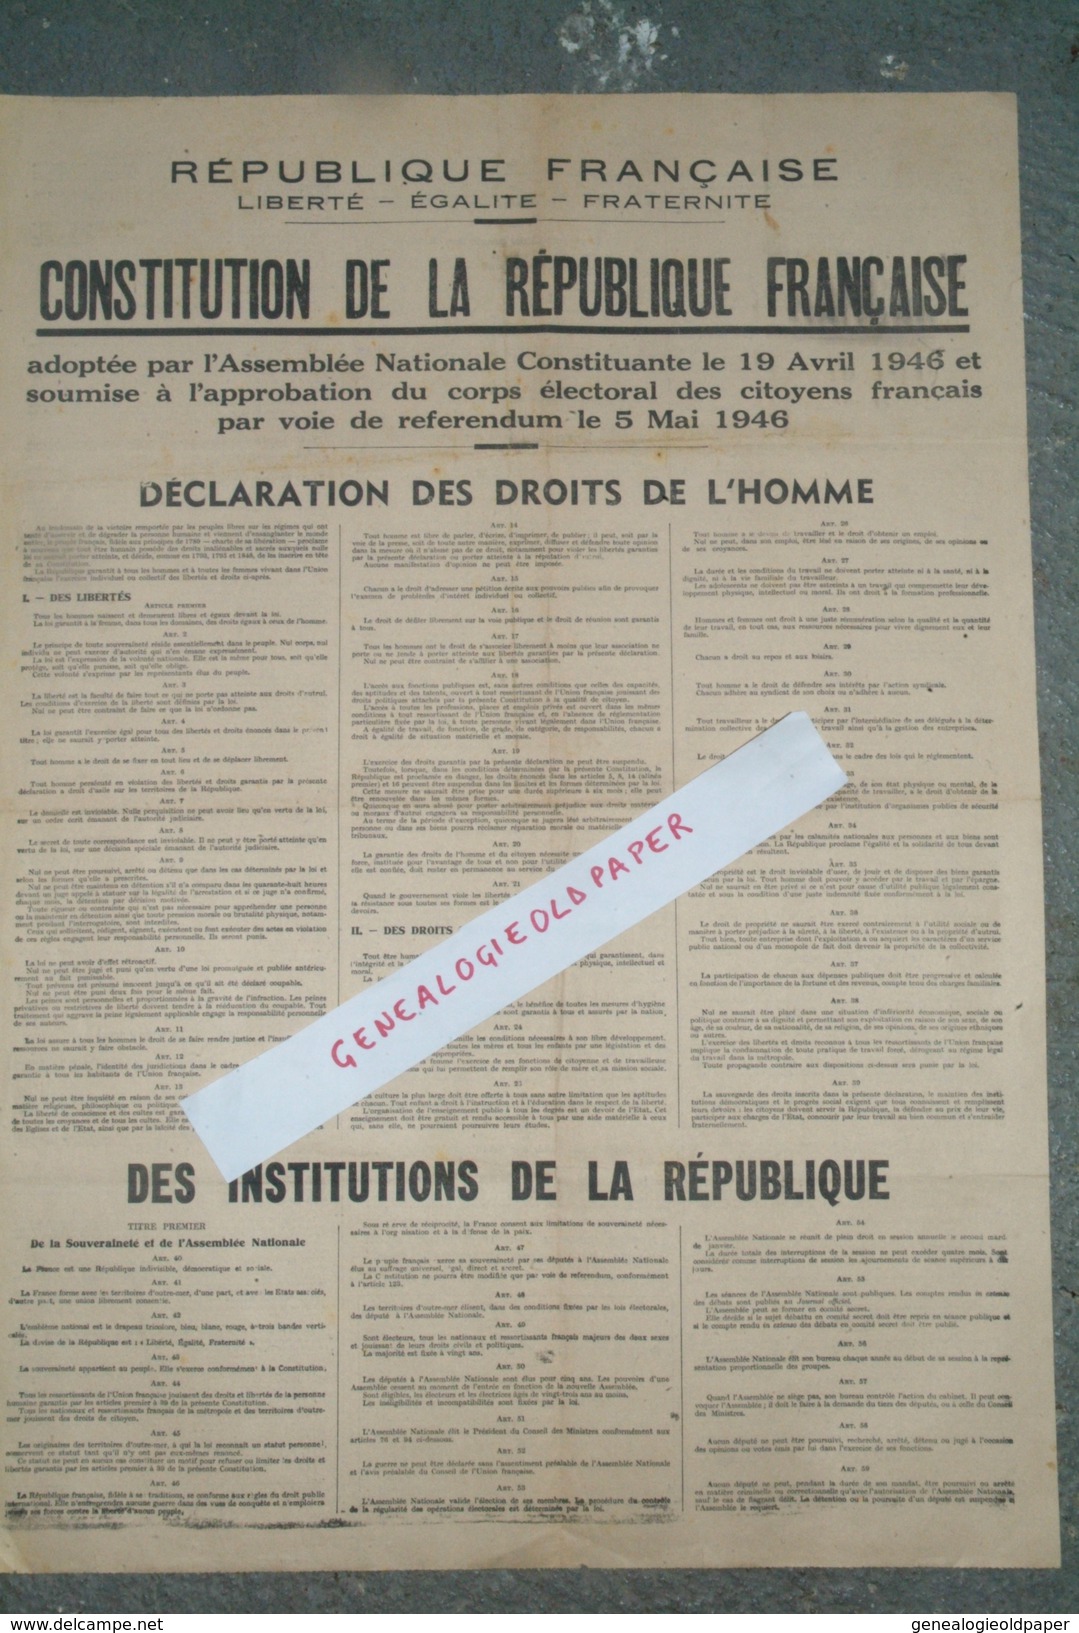 POLITIQUE - AFFICHE CONSTITUTION REPUBLIQUE FRANCAISE -ASSEMBLEE NATIONALE 19 AVRIL 1946- REFERENDUM 5 MAI 1946-DROITS - Plakate